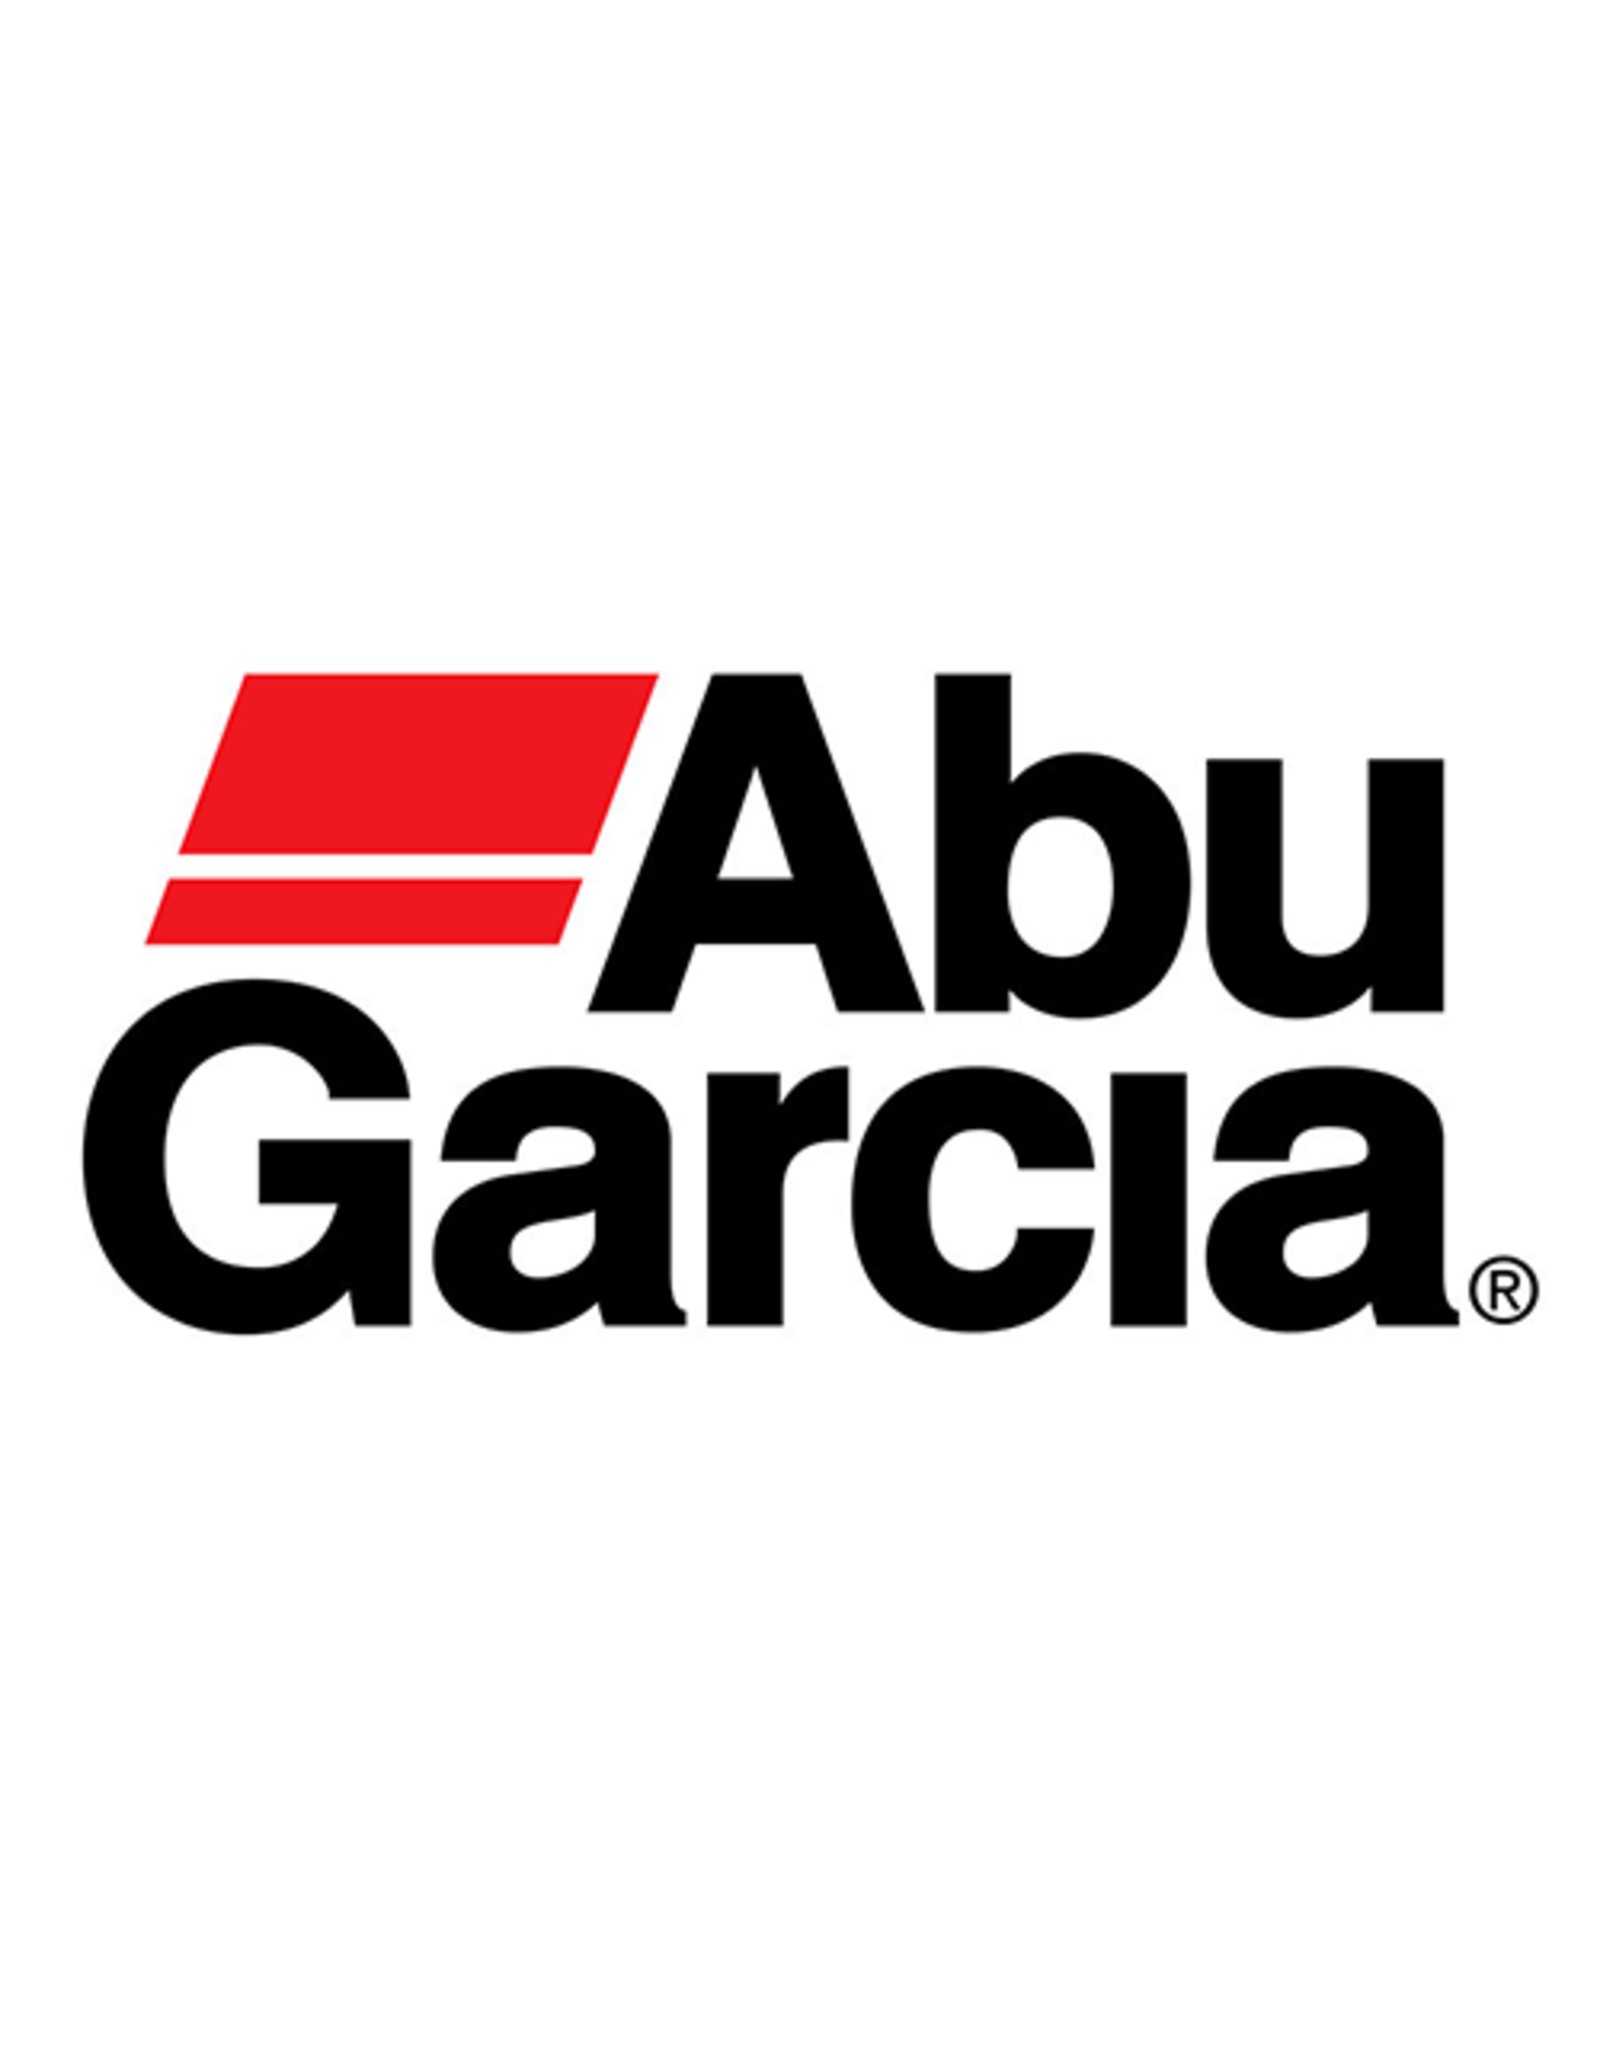 Abu Garcia 22665  DRAG WASHER-CARBON